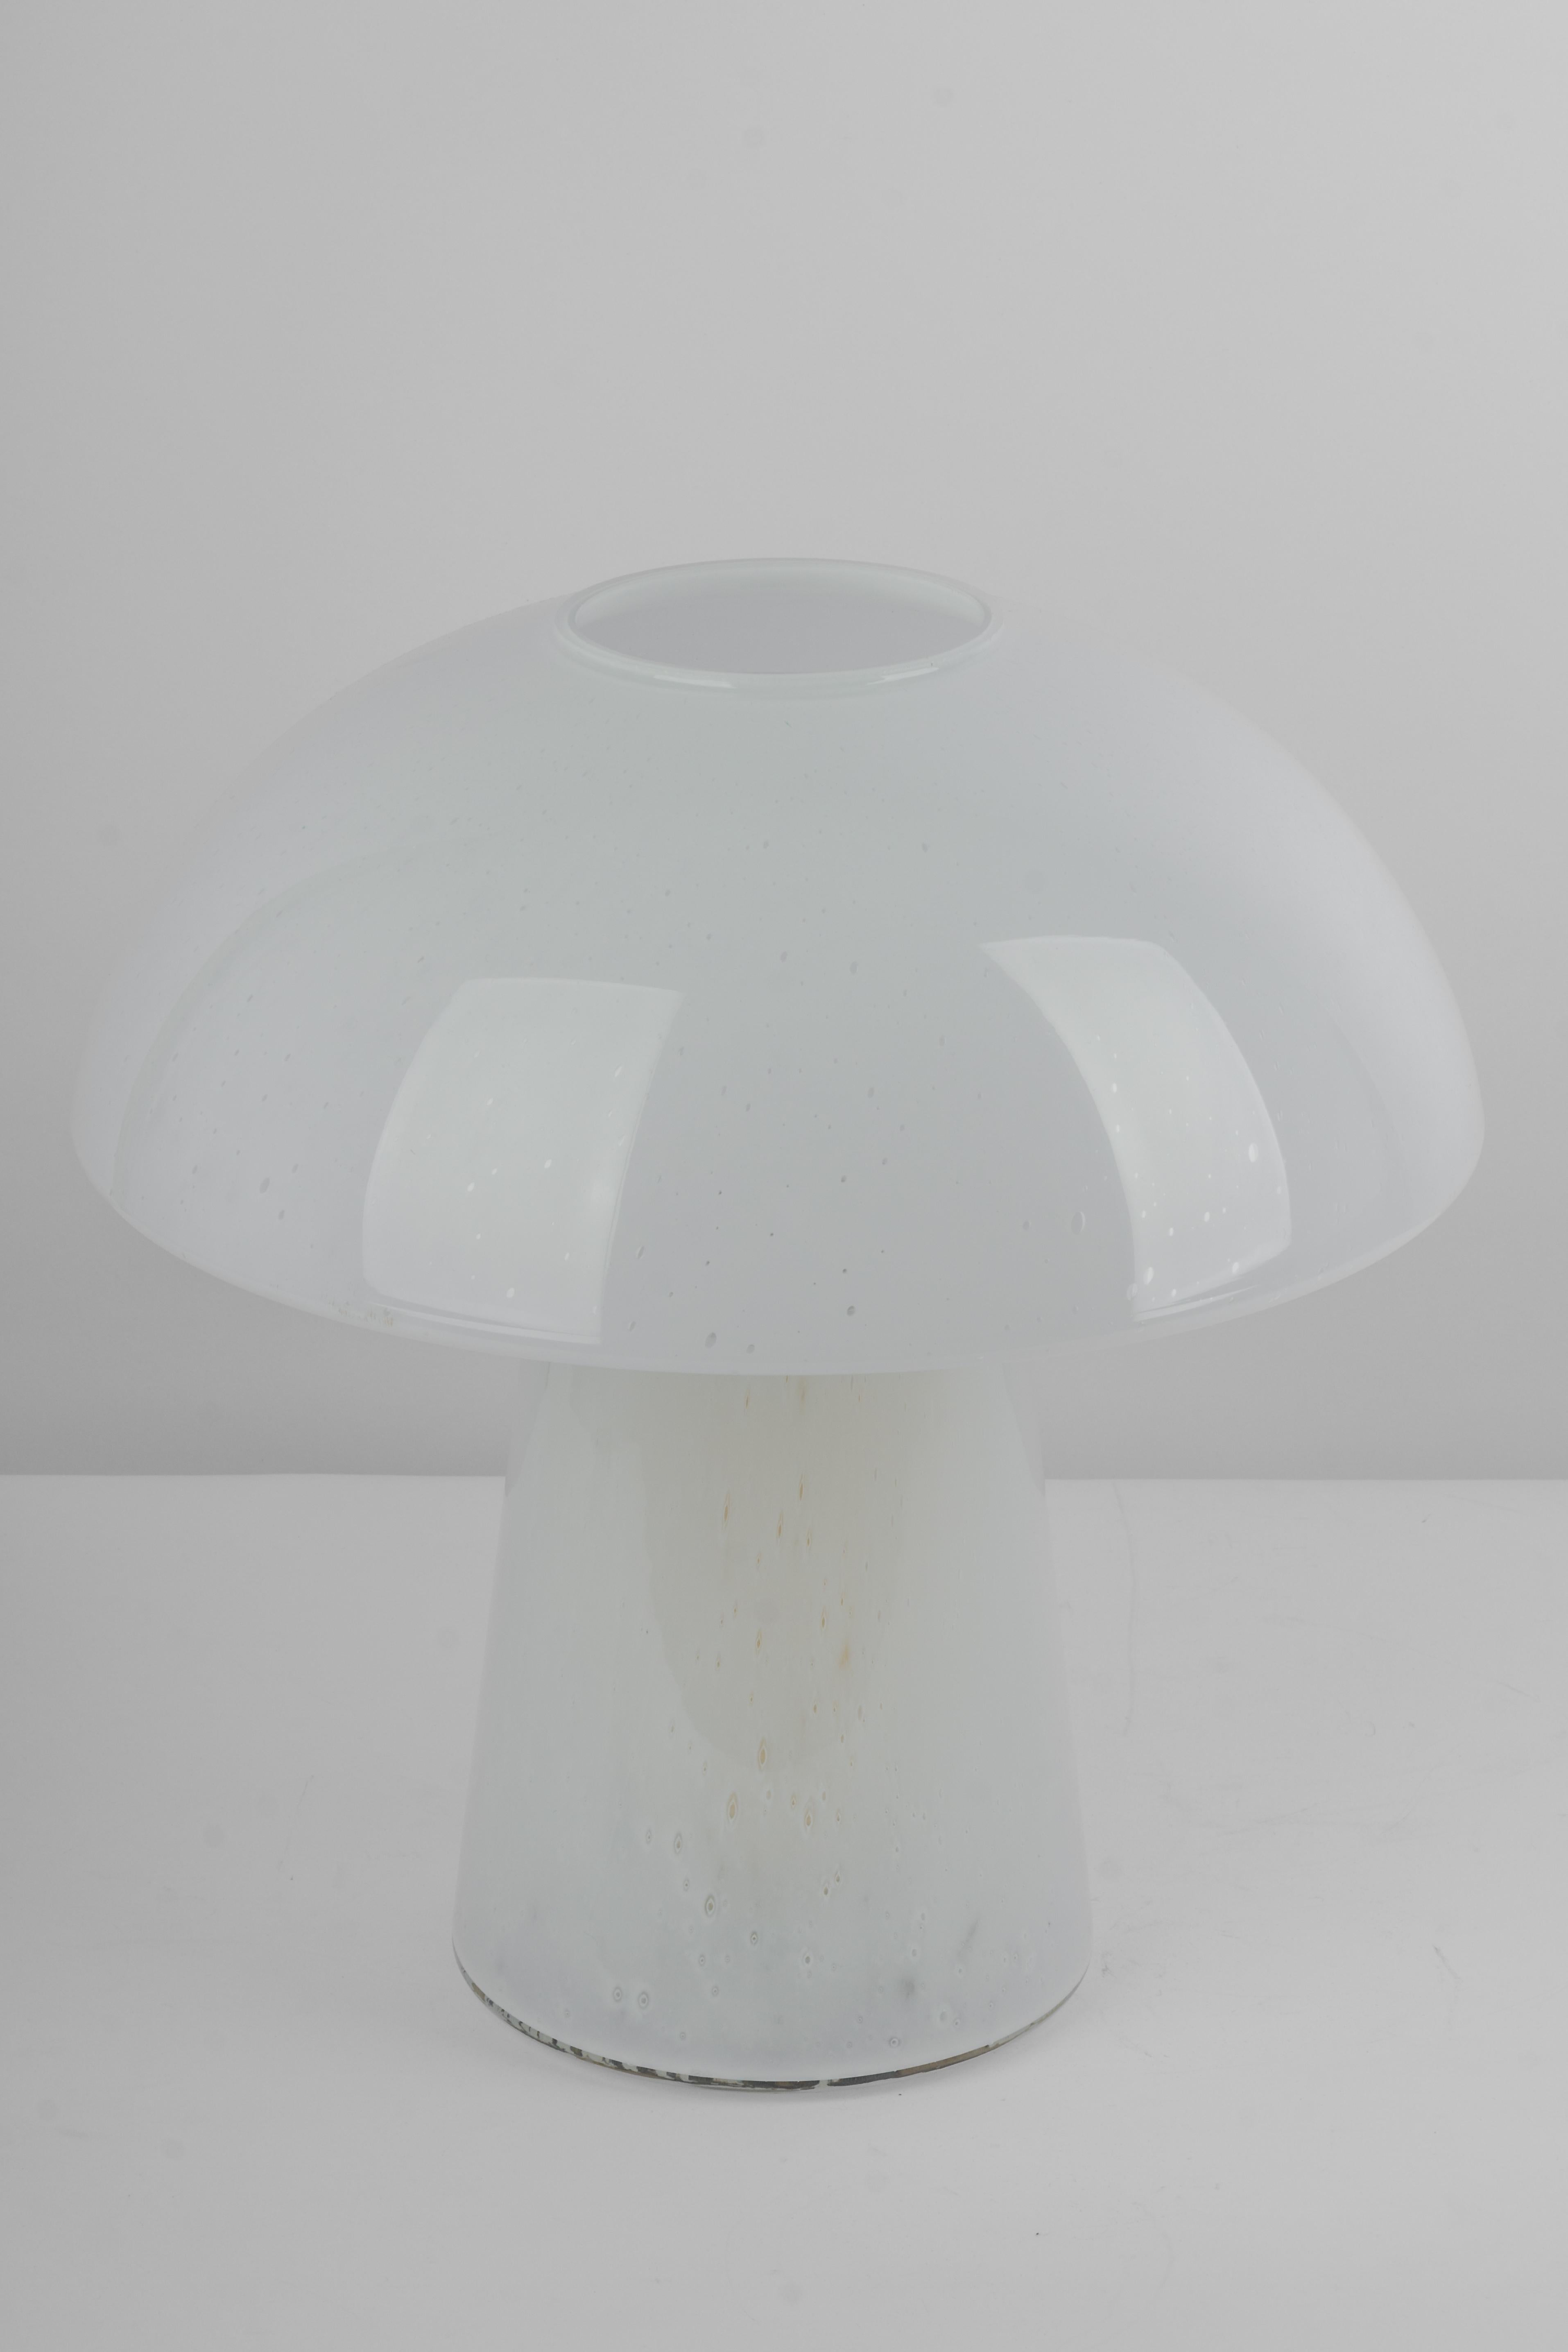 Merveilleuse lampe de table champignon de Limburg, Allemagne, années 1970. Fabriqué en une seule pièce.
Le corps en verre et sa qualité tranchante contrastent joliment avec la surface lisse et la forme du champignon. 

Mesures : Grande lampe de